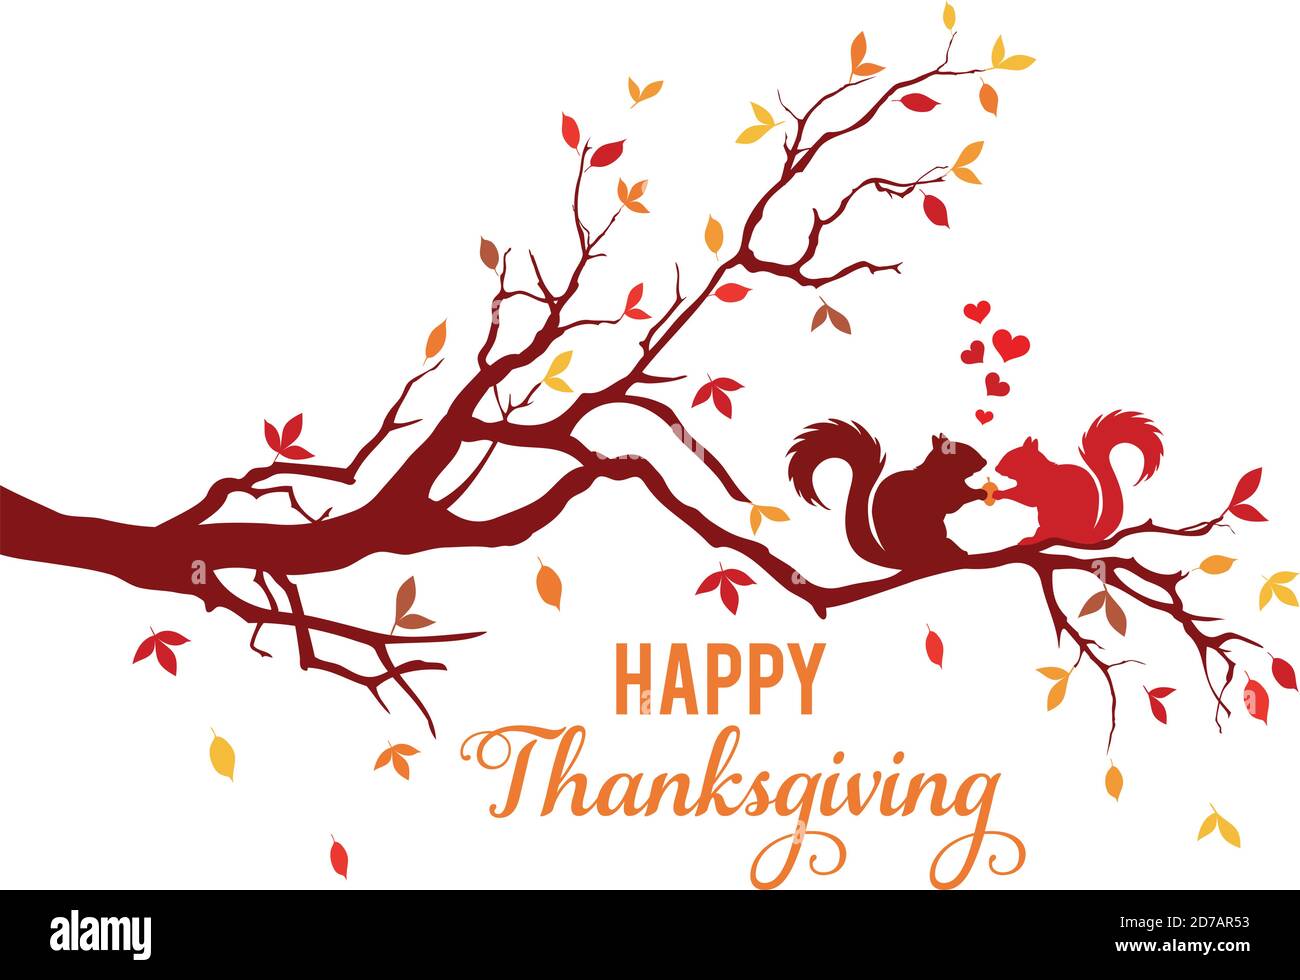 Thanksgiving-Karte, Baumzweig mit Eichhörnchen und bunten Herbstblättern, Vektorgrafik Stock Vektor